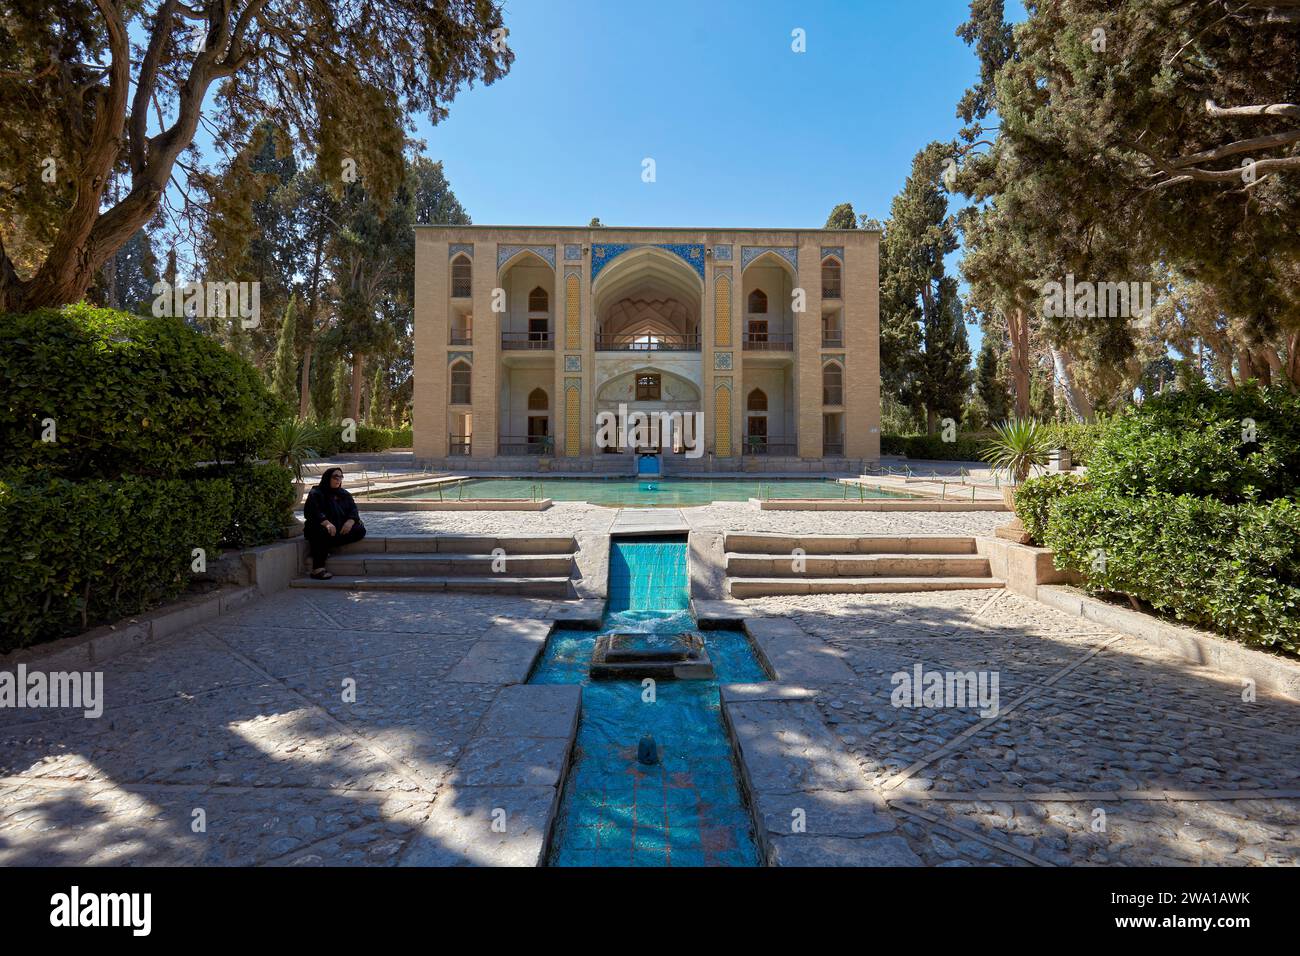 La donna si trova al Padiglione Safavid nel Giardino fin (Bagh-e fin), il più antico (1590) giardino persiano esistente in Iran e sito patrimonio dell'umanità dell'UNESCO. Kashan, Iran. Foto Stock